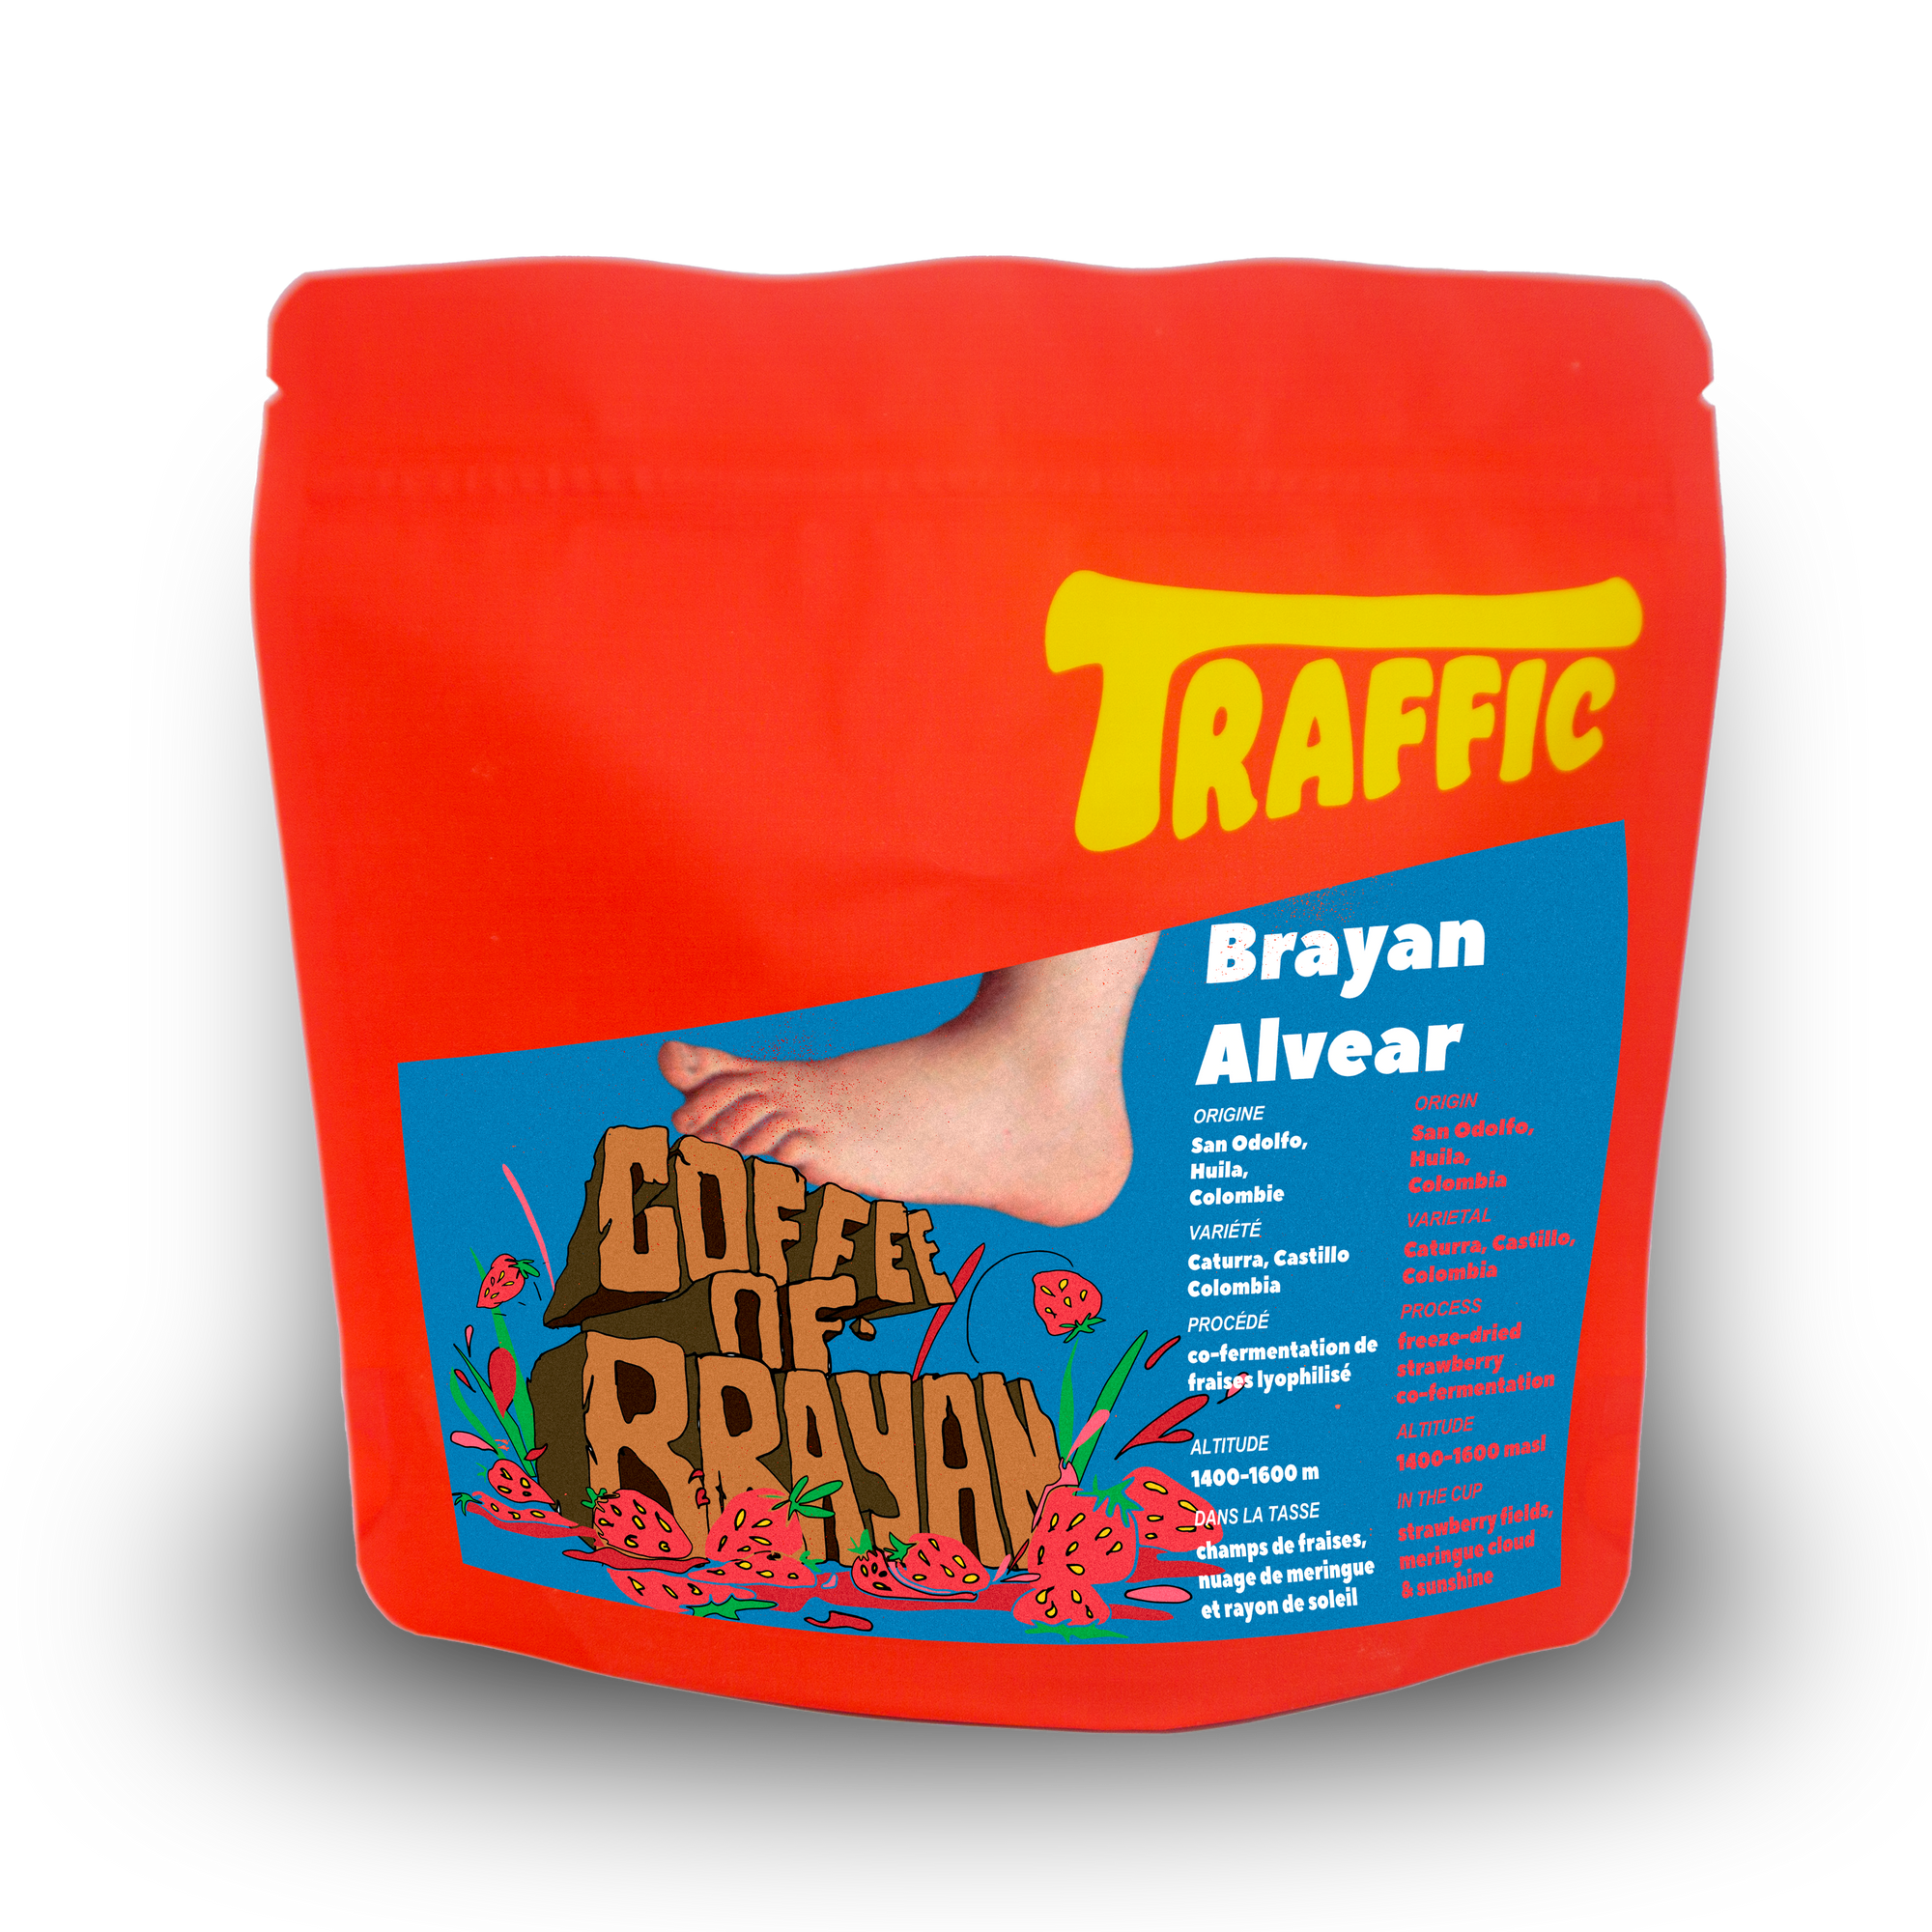 COFFEE OF BRAYAN